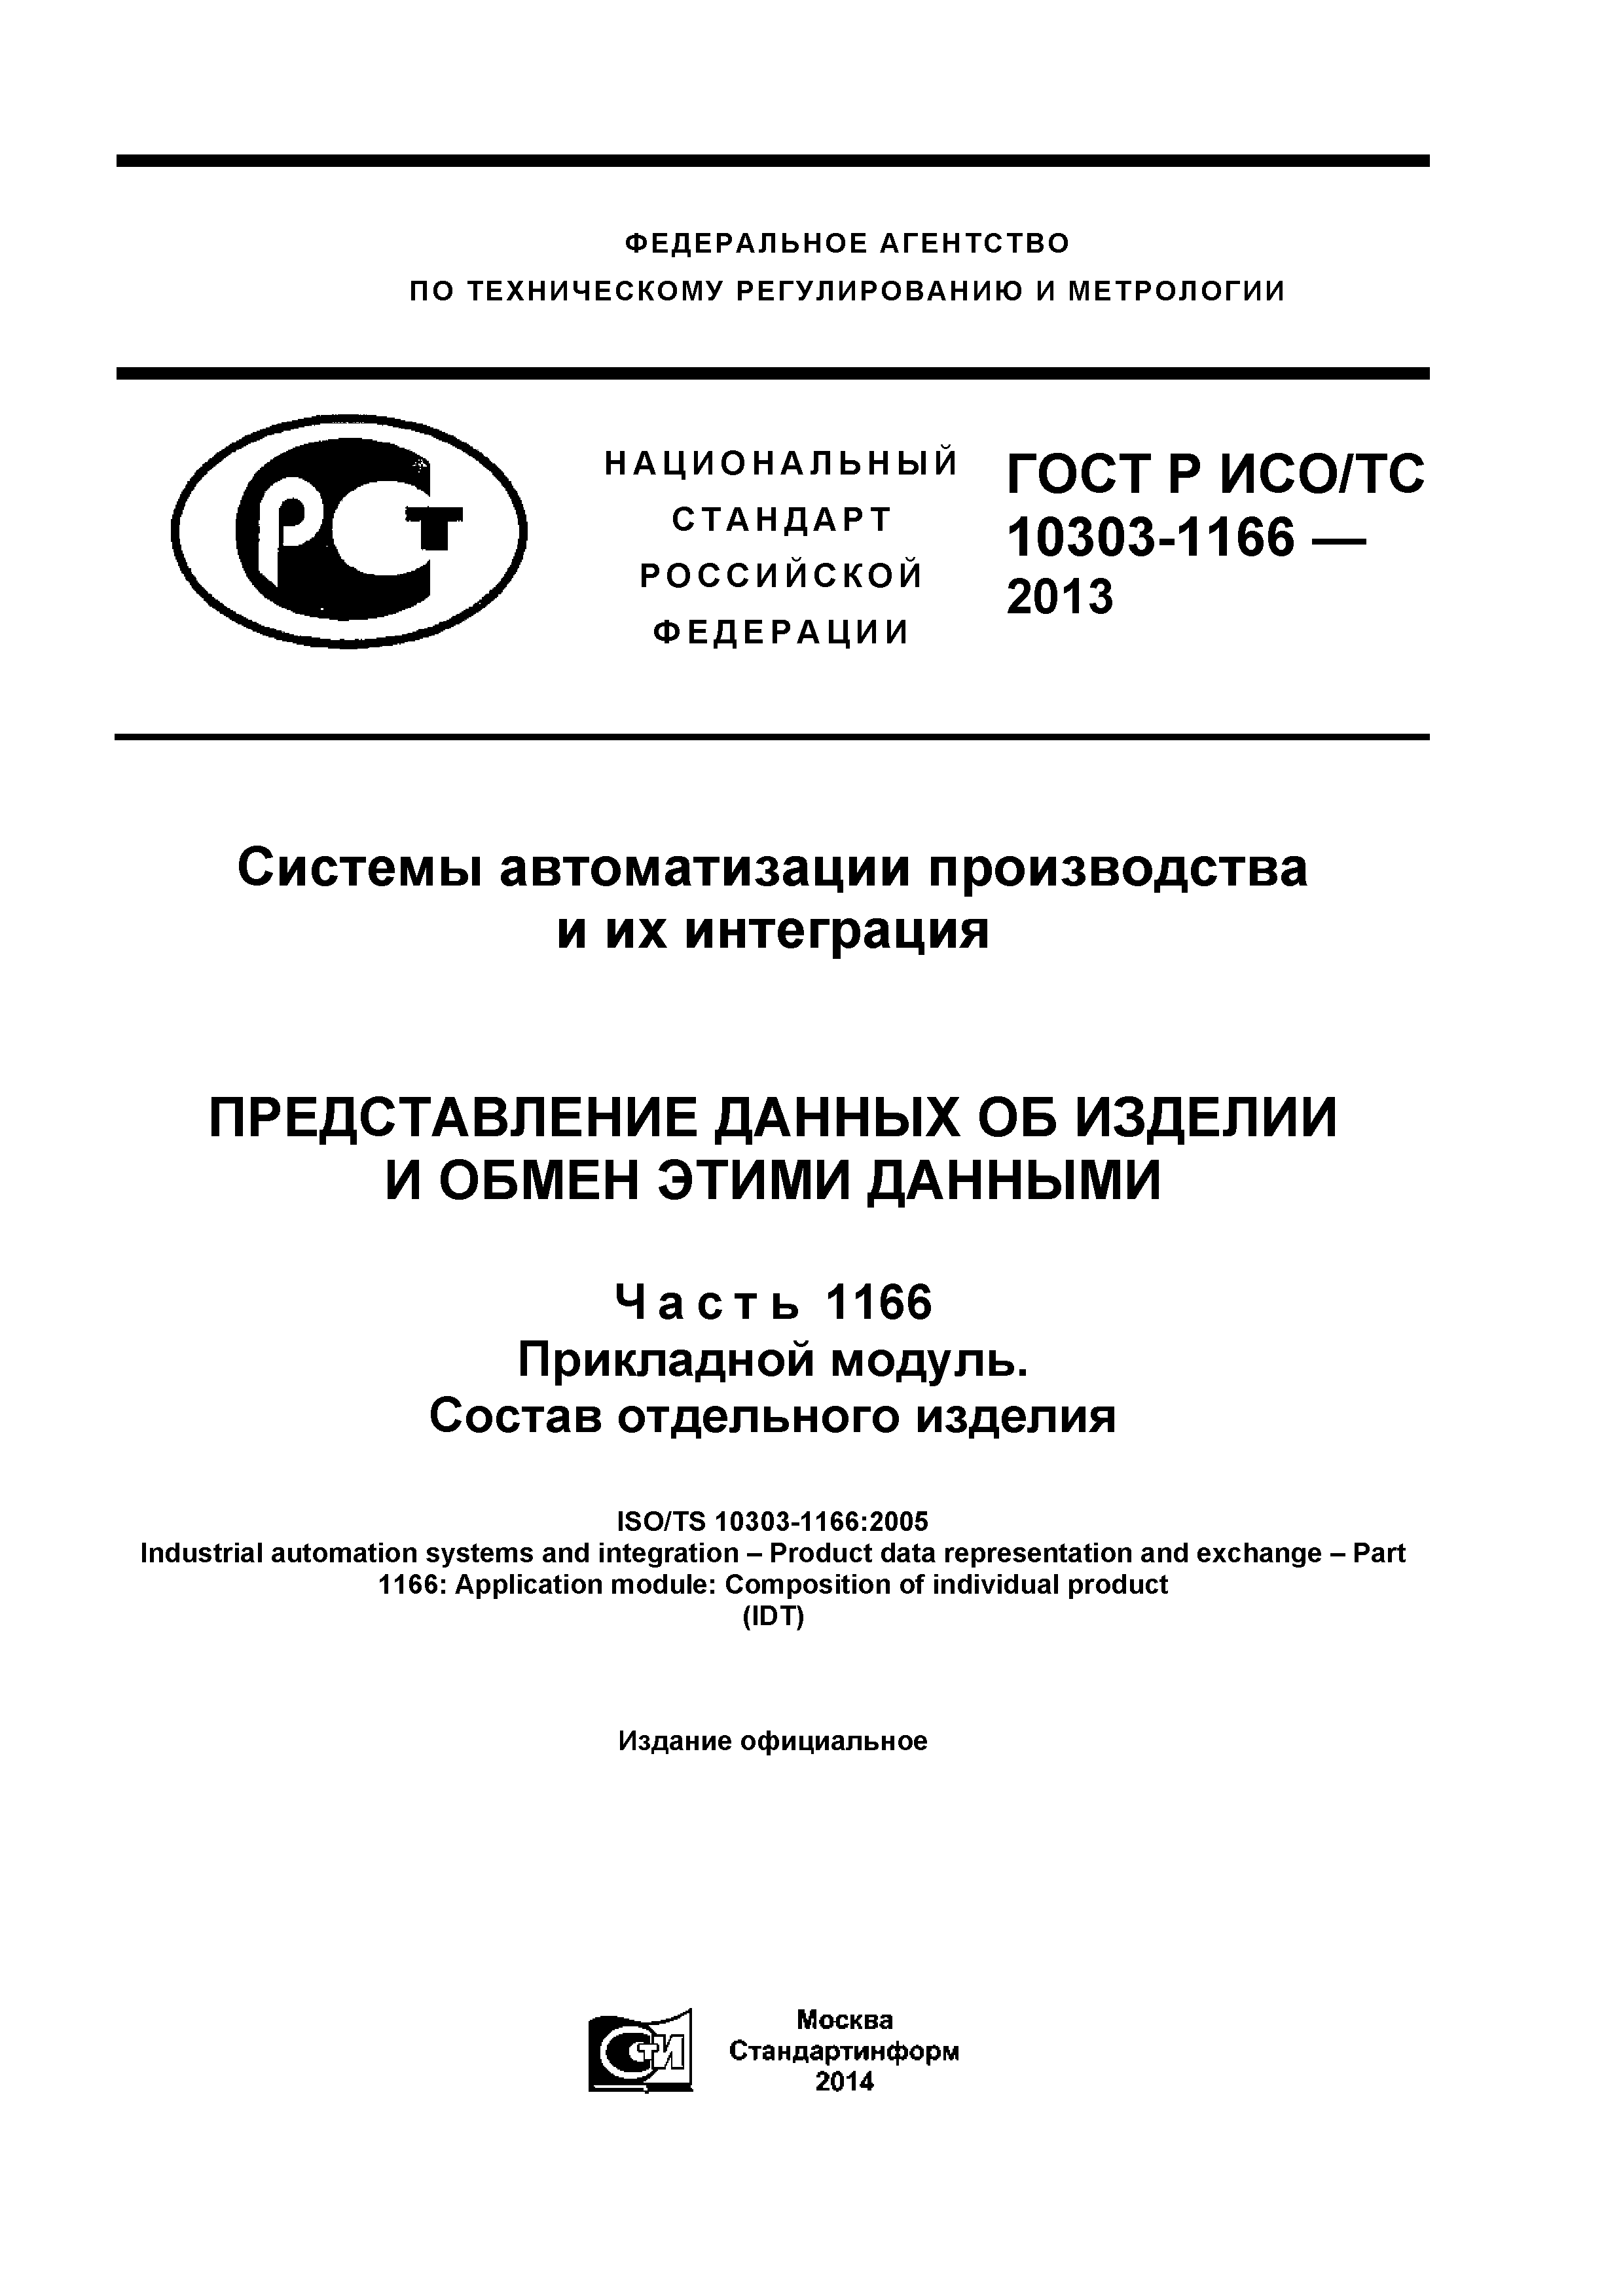 ГОСТ Р ИСО/ТС 10303-1166-2013